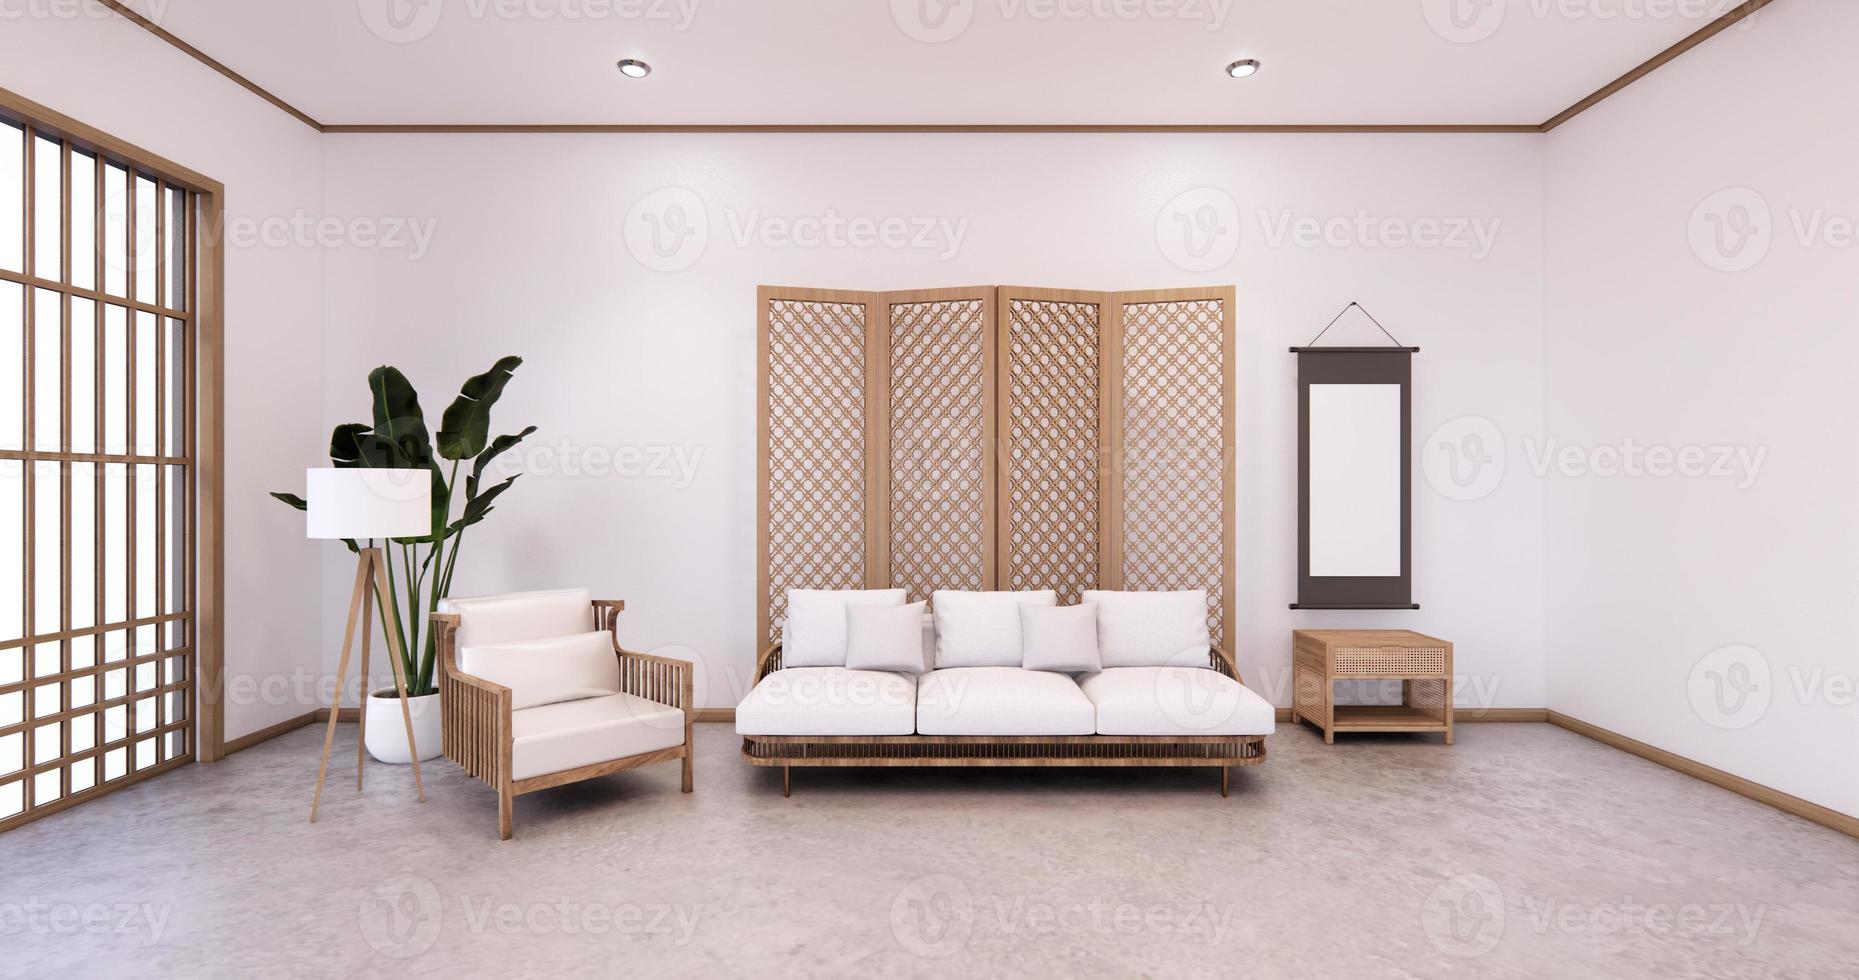 tabique japonés en el interior tropical de la habitación con piso de tatami y pared blanca. Representación 3D foto